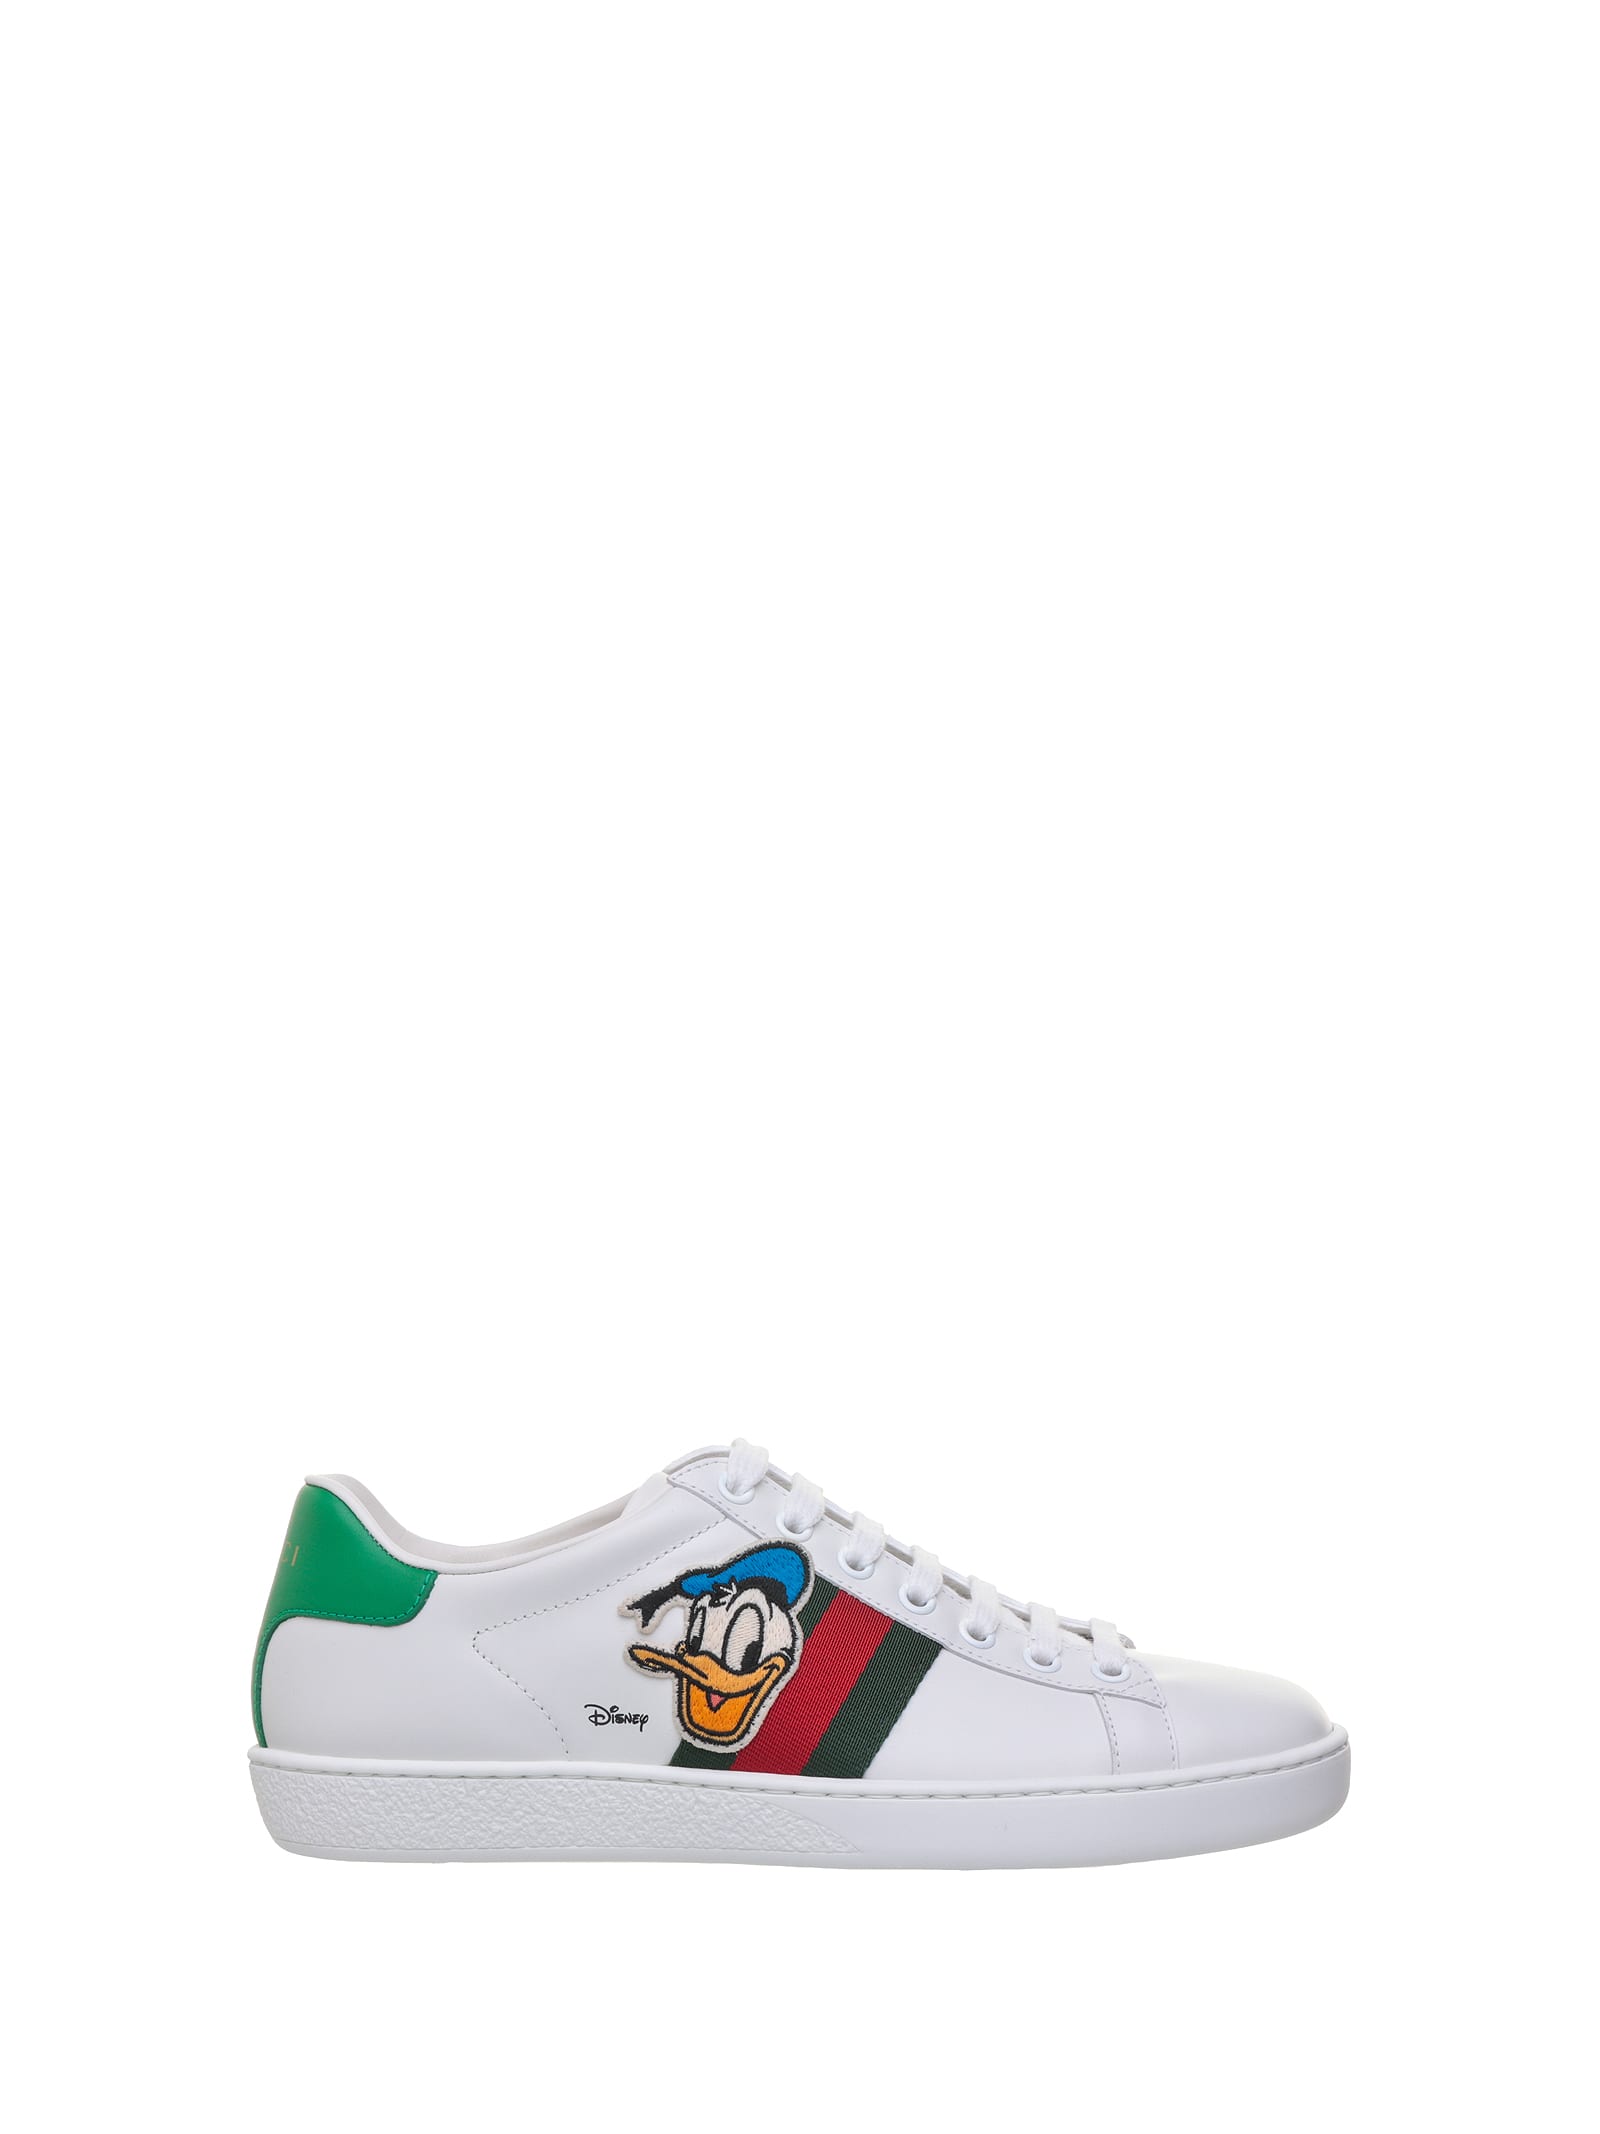 Gucci Donald Duck Disney X Gucci Ace Sneaker